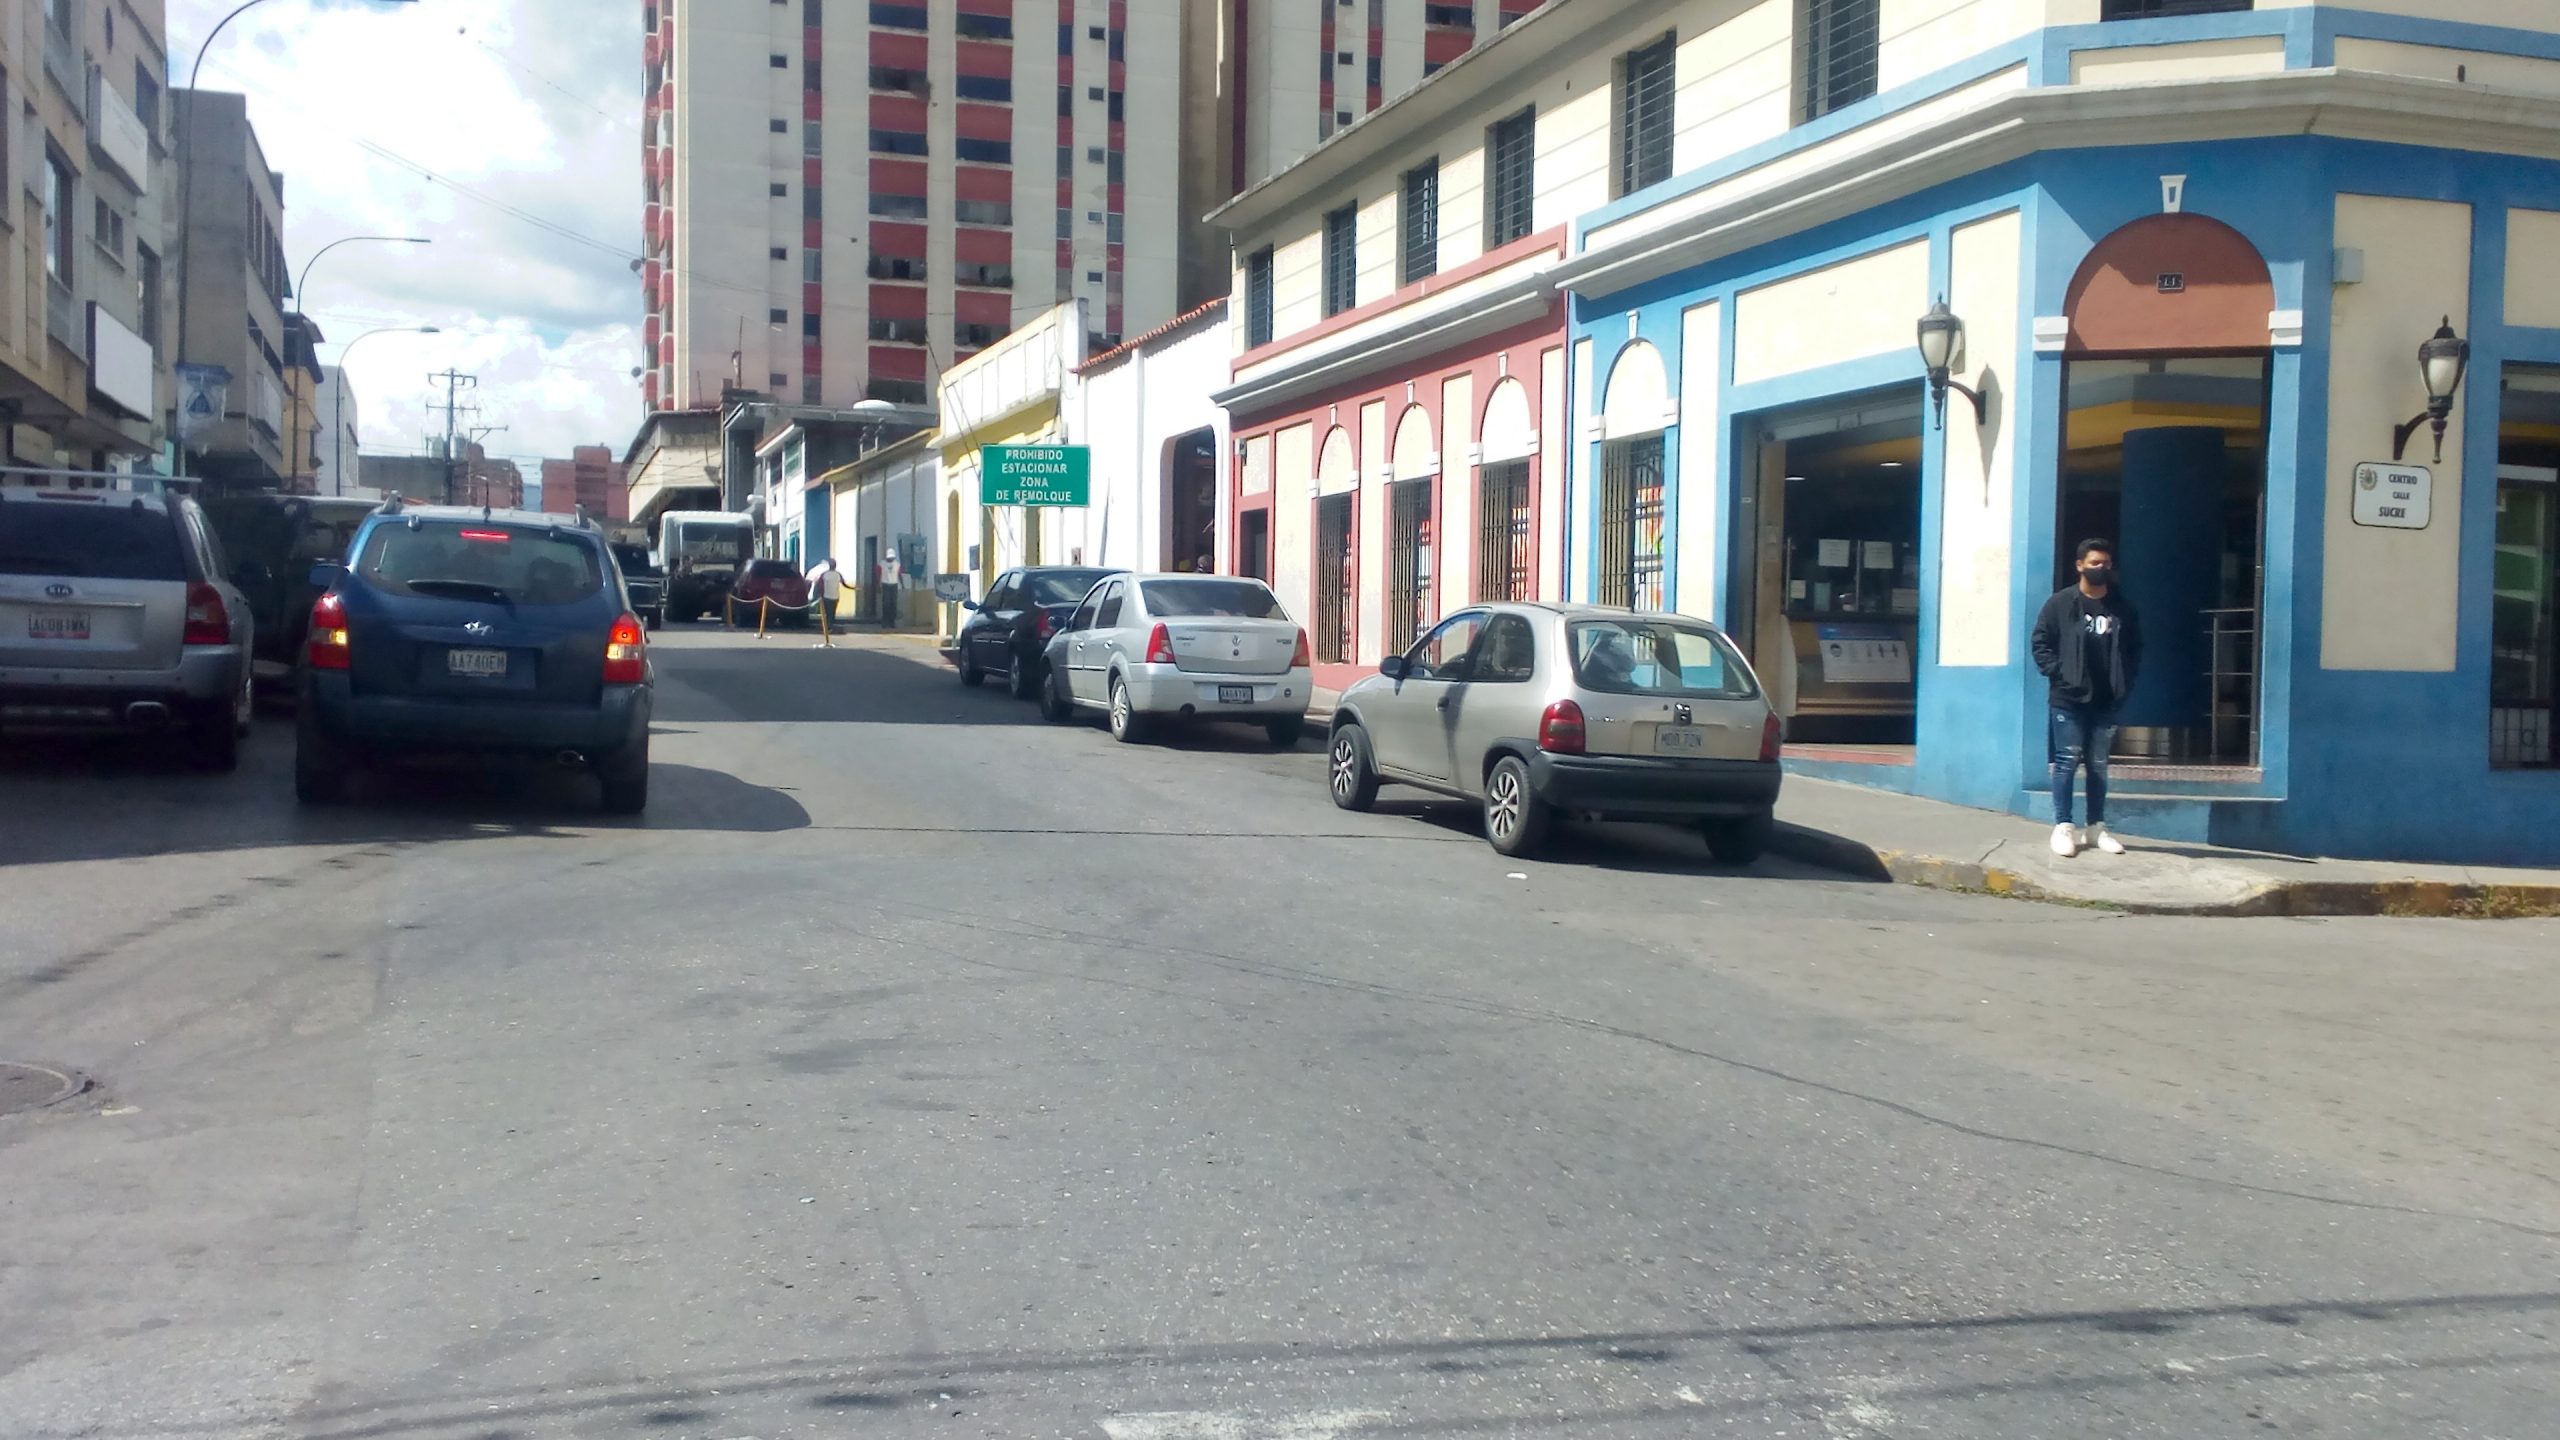 El hampa se encuentra “acelerada y sin freno” en la calle Guaicaipuro